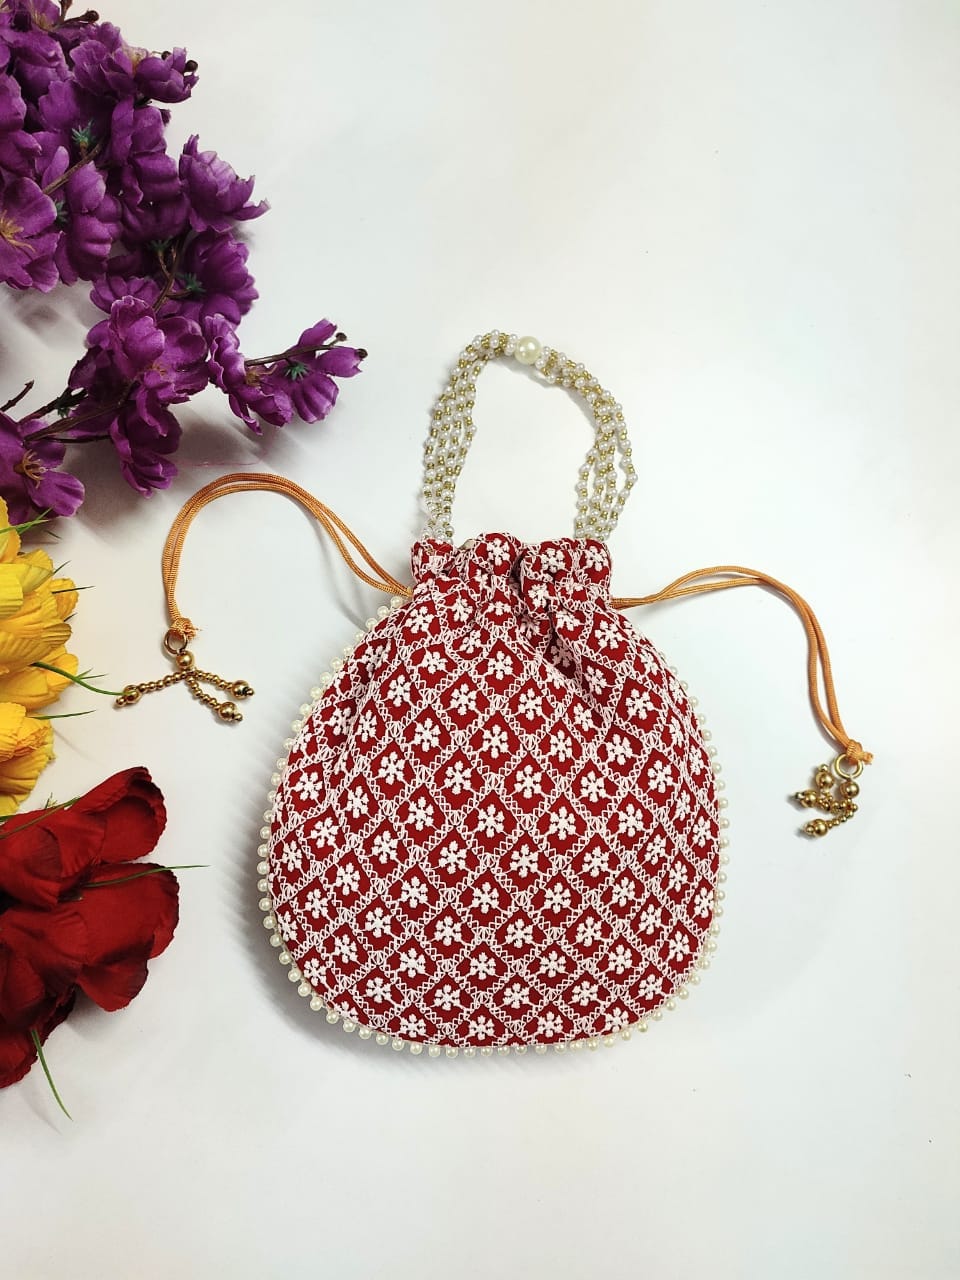 LAMANSH ® Women's Potli Bag LAMANSH® (Size - 6*8 inch) Lucknavi Chikankari work potli bags for gifting / Designer Potli bags for indian wedding ceremonies